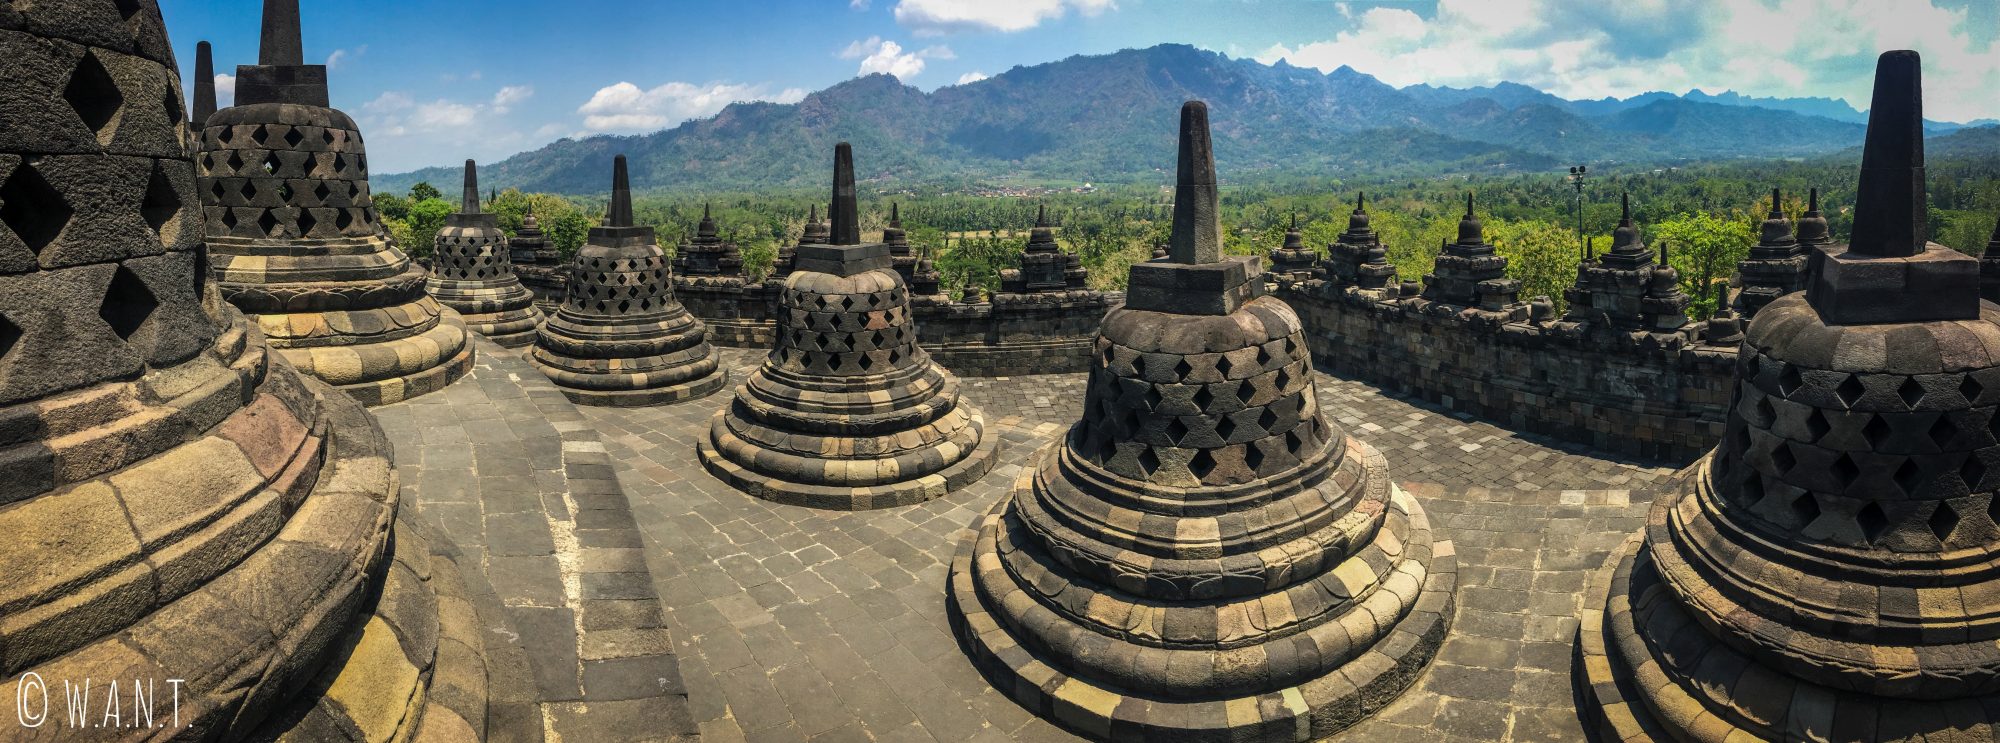 Panorama sur les stupas du temple de Borobudur